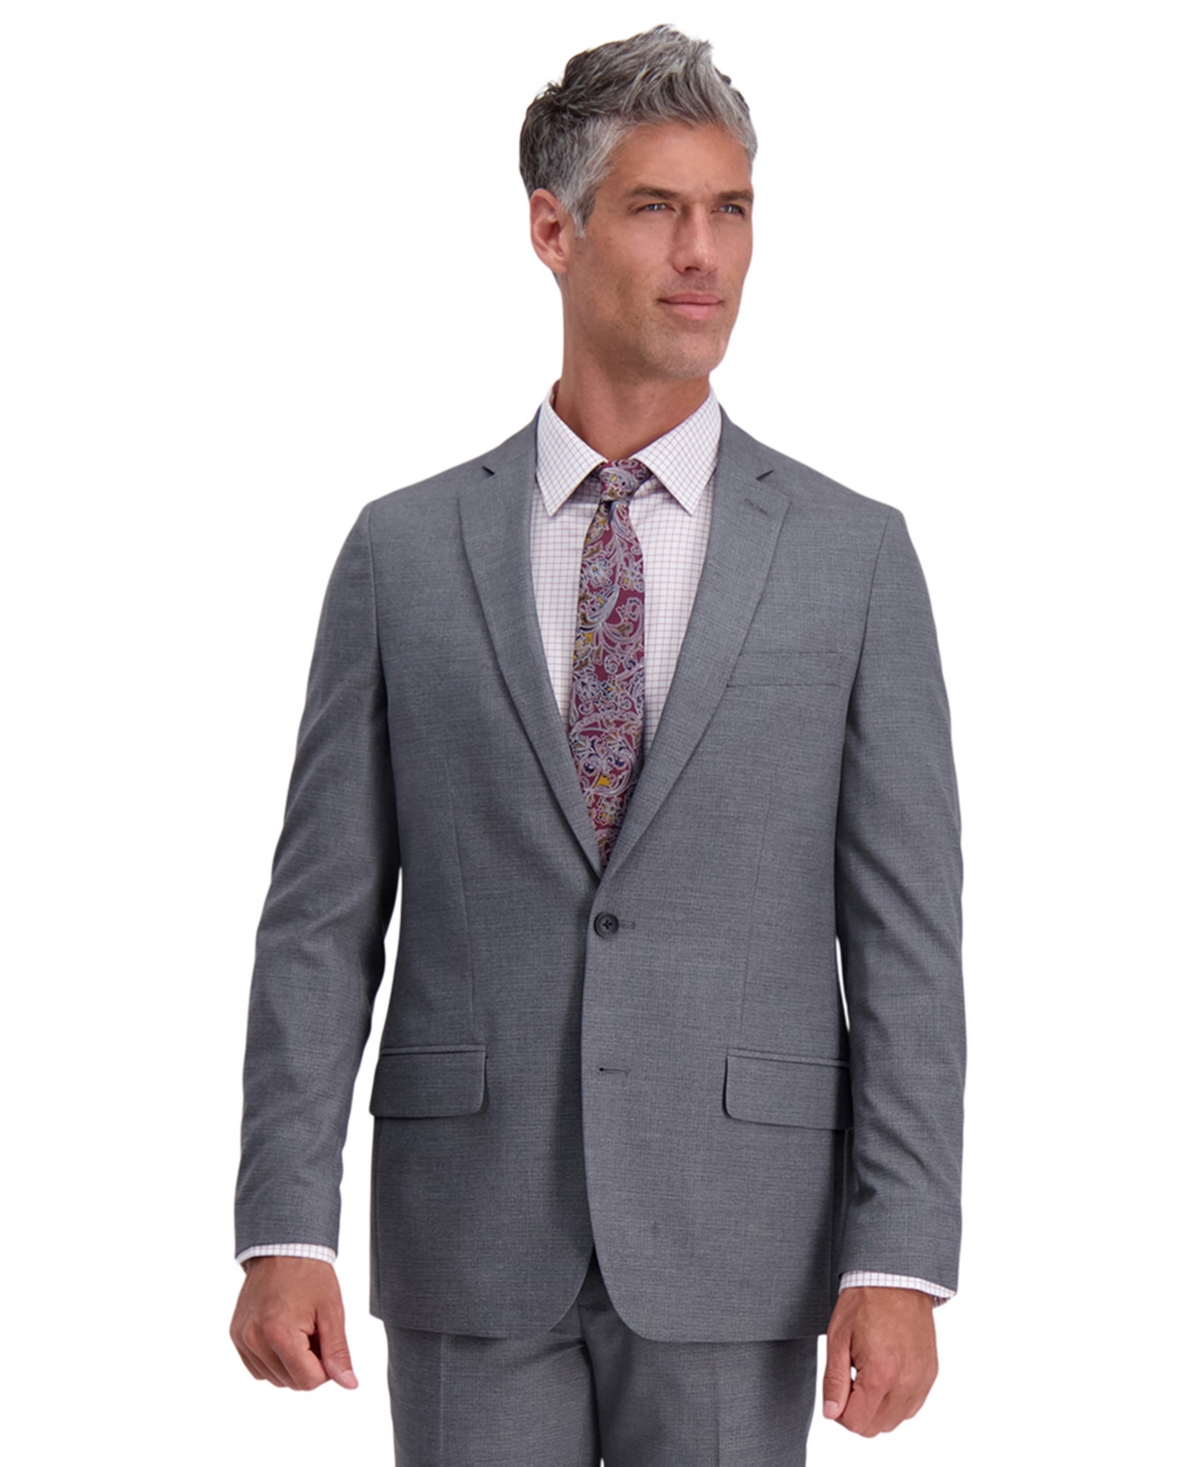 J.m. Haggar Men's Grid Pattern Slim Fit Suit Jacket - Oxford